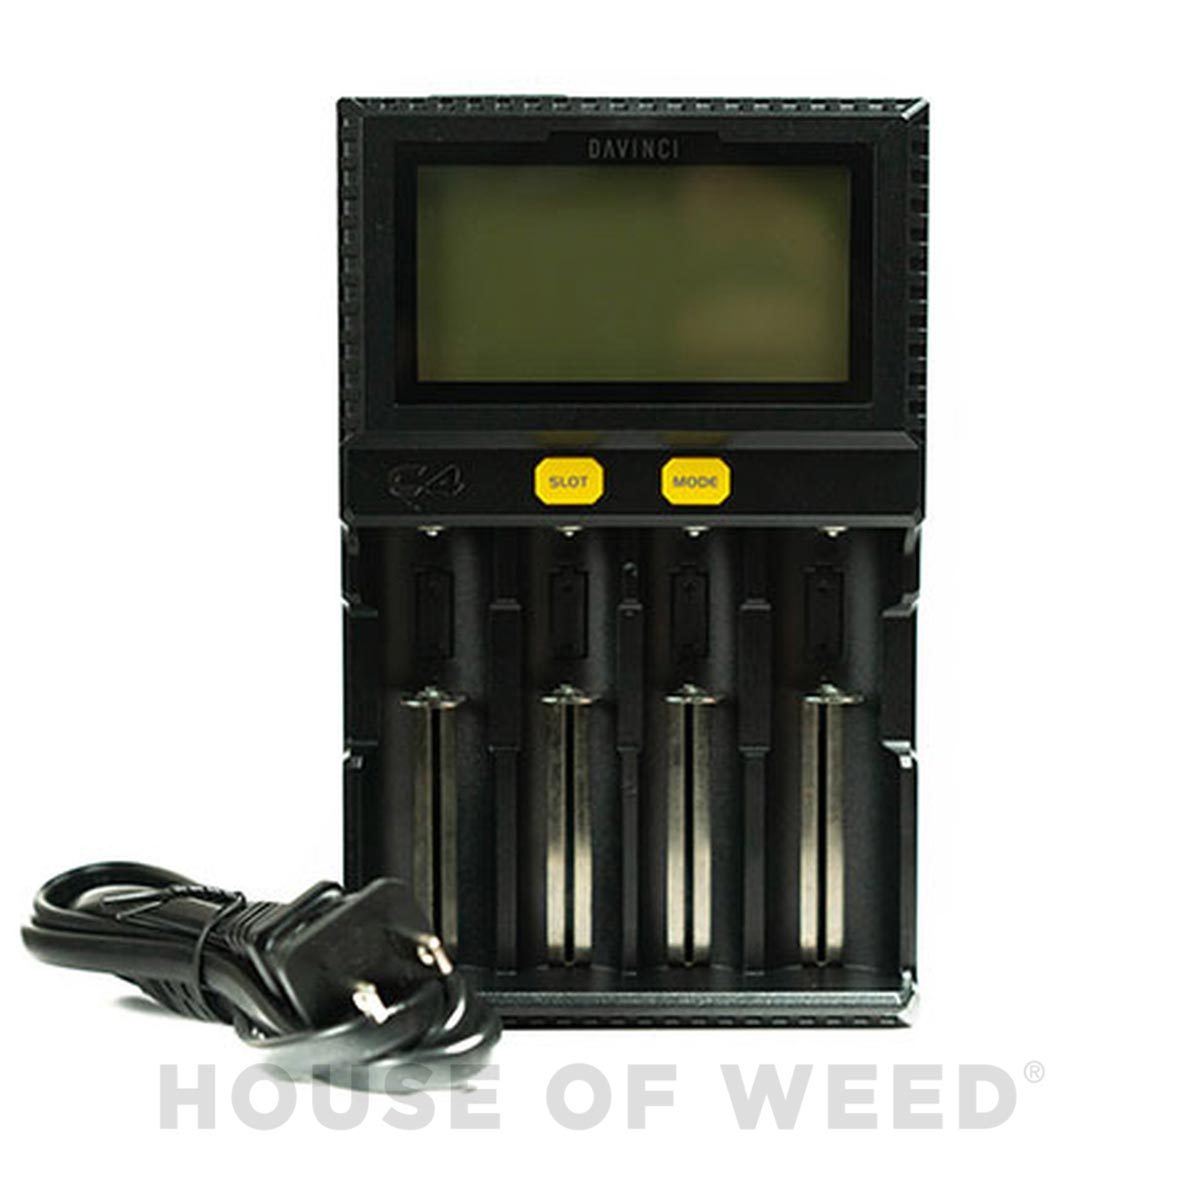 Cargador de baterías Vaporizadores DaVinci house of weed tienda online 